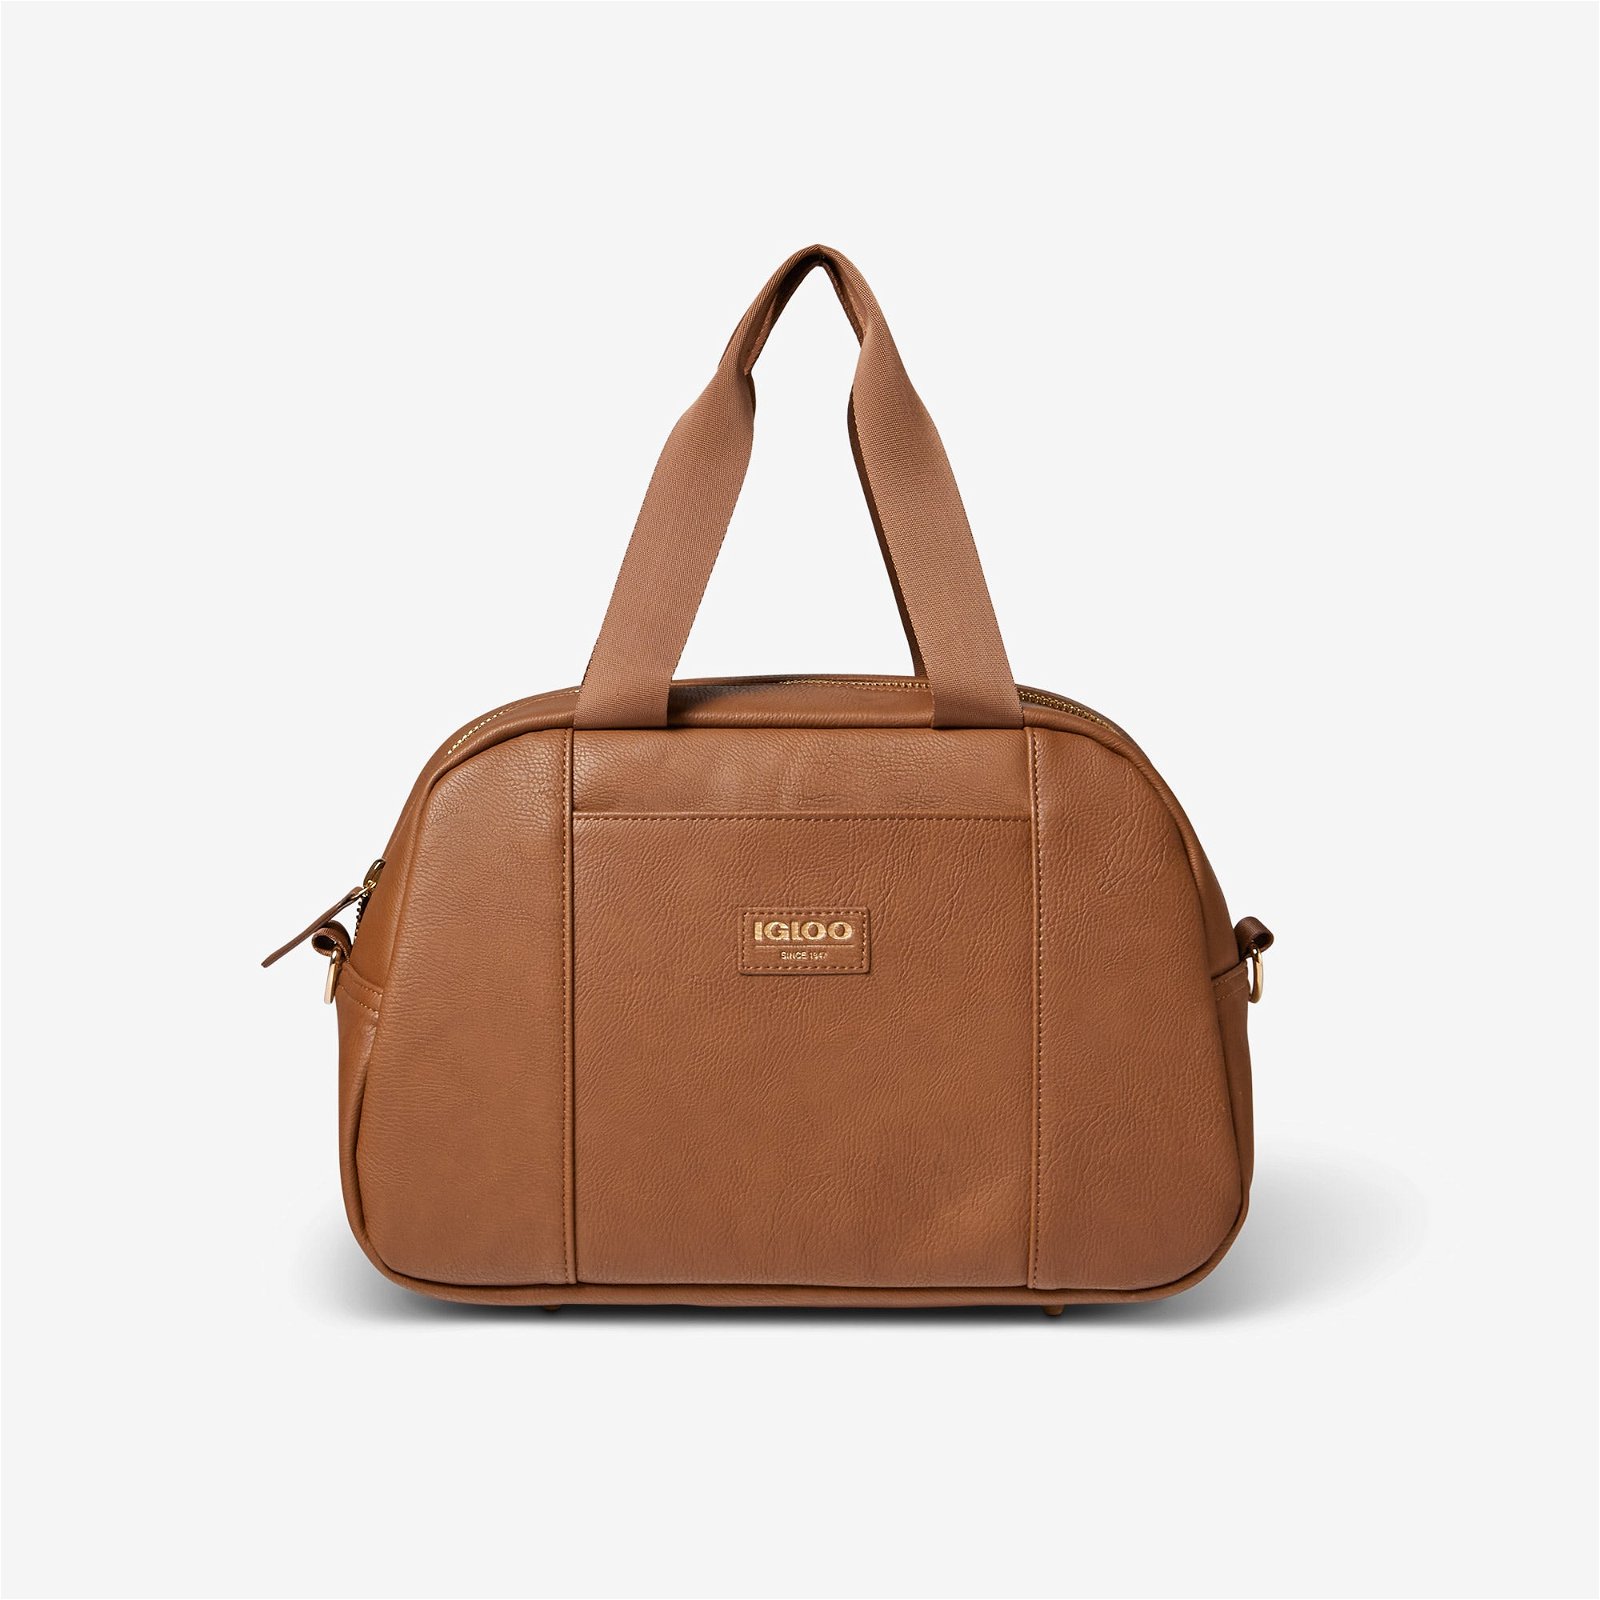 Luxe Satchel Cooler Bag